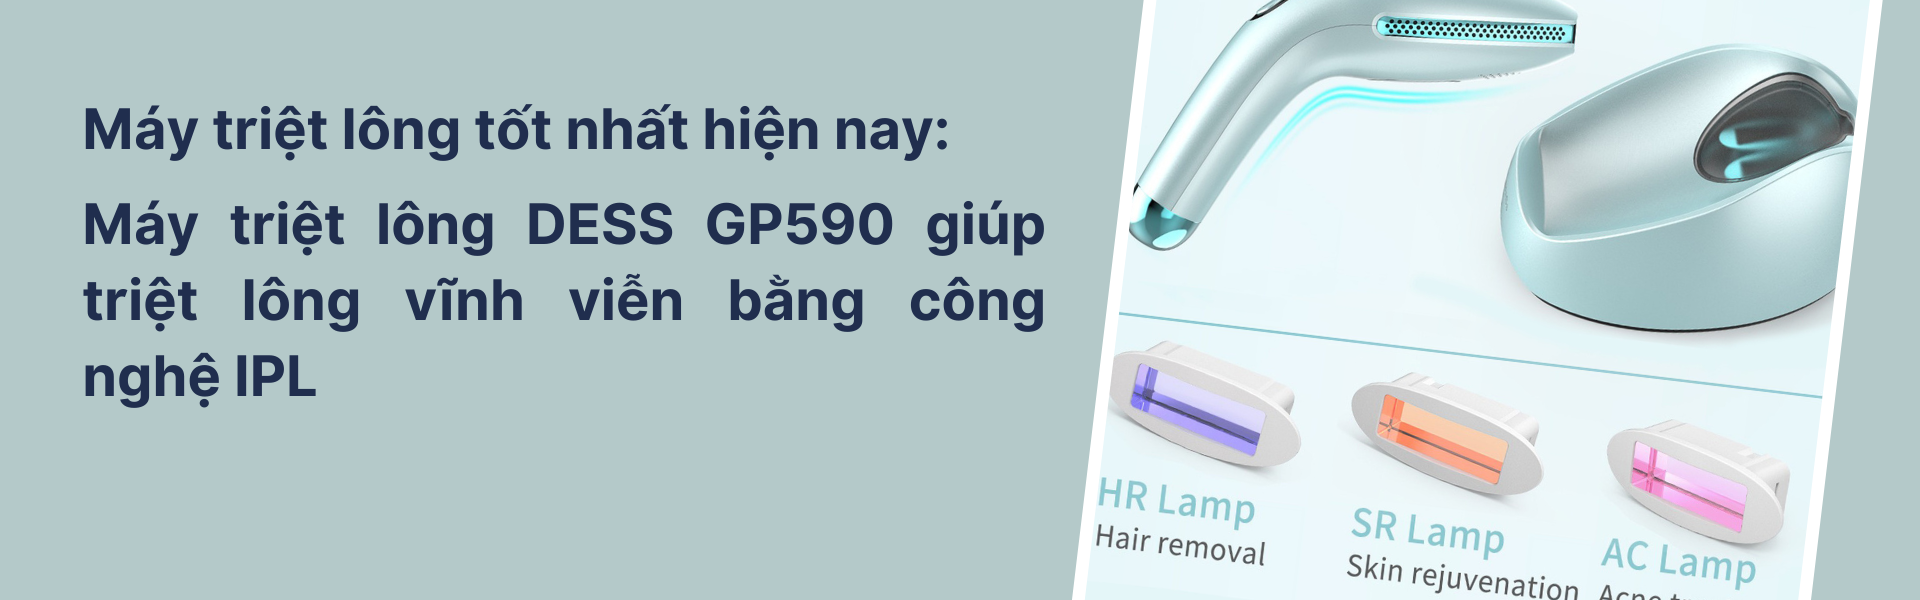 Máy triệt lông DEESS GP590 giúp triệt lông vĩnh viễn bằng công nghệ IPL